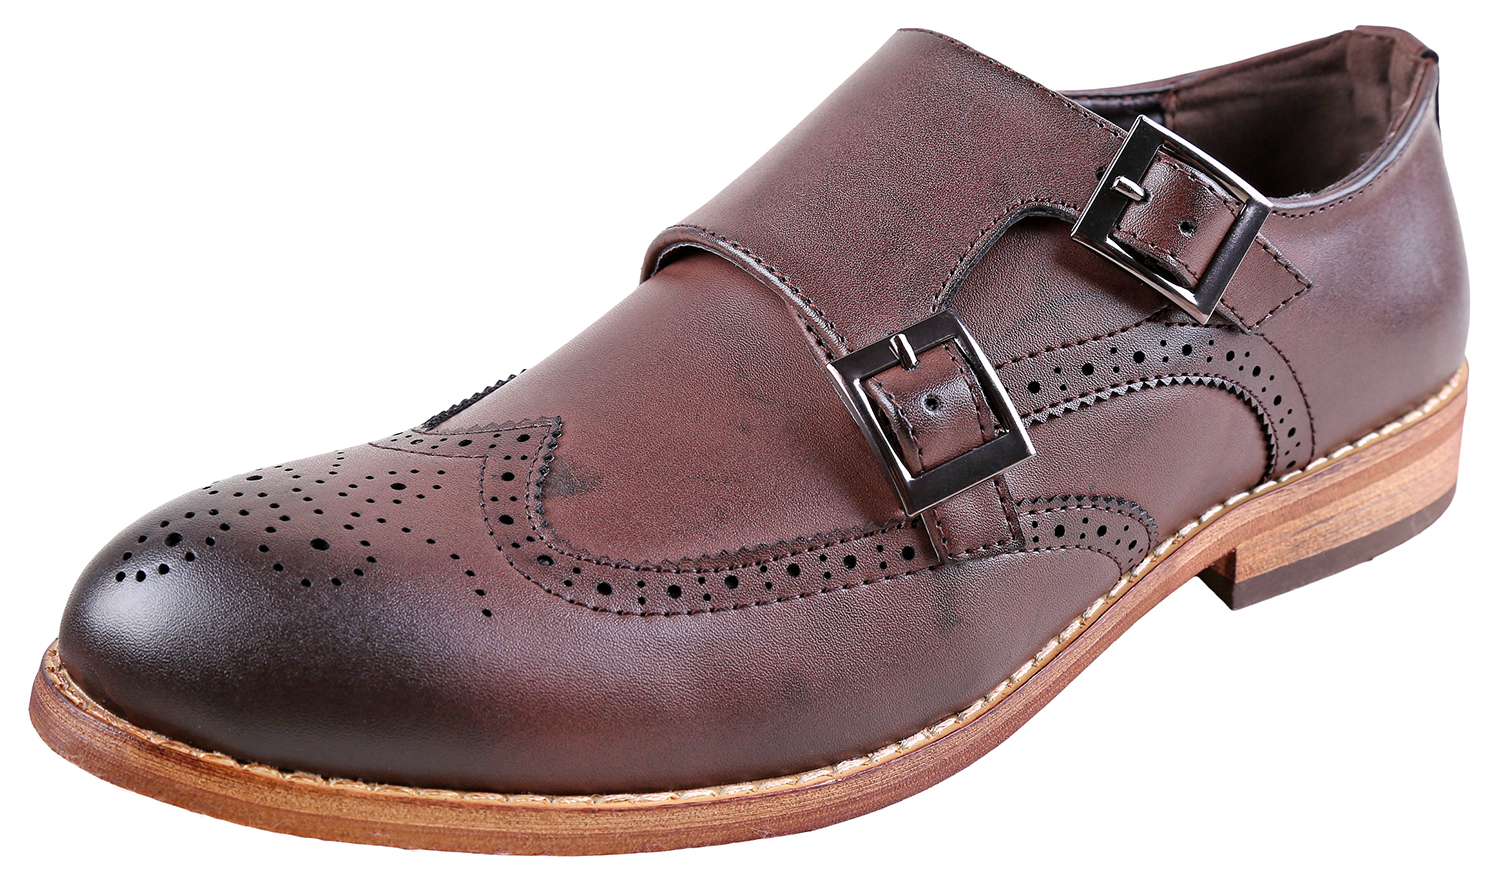 Urban Fox Allen Men's Dress Shoe | Double Monk Strap | Brogue | Wingtip Shoes for Men | Dark Brown 11 M US - image 1 of 7